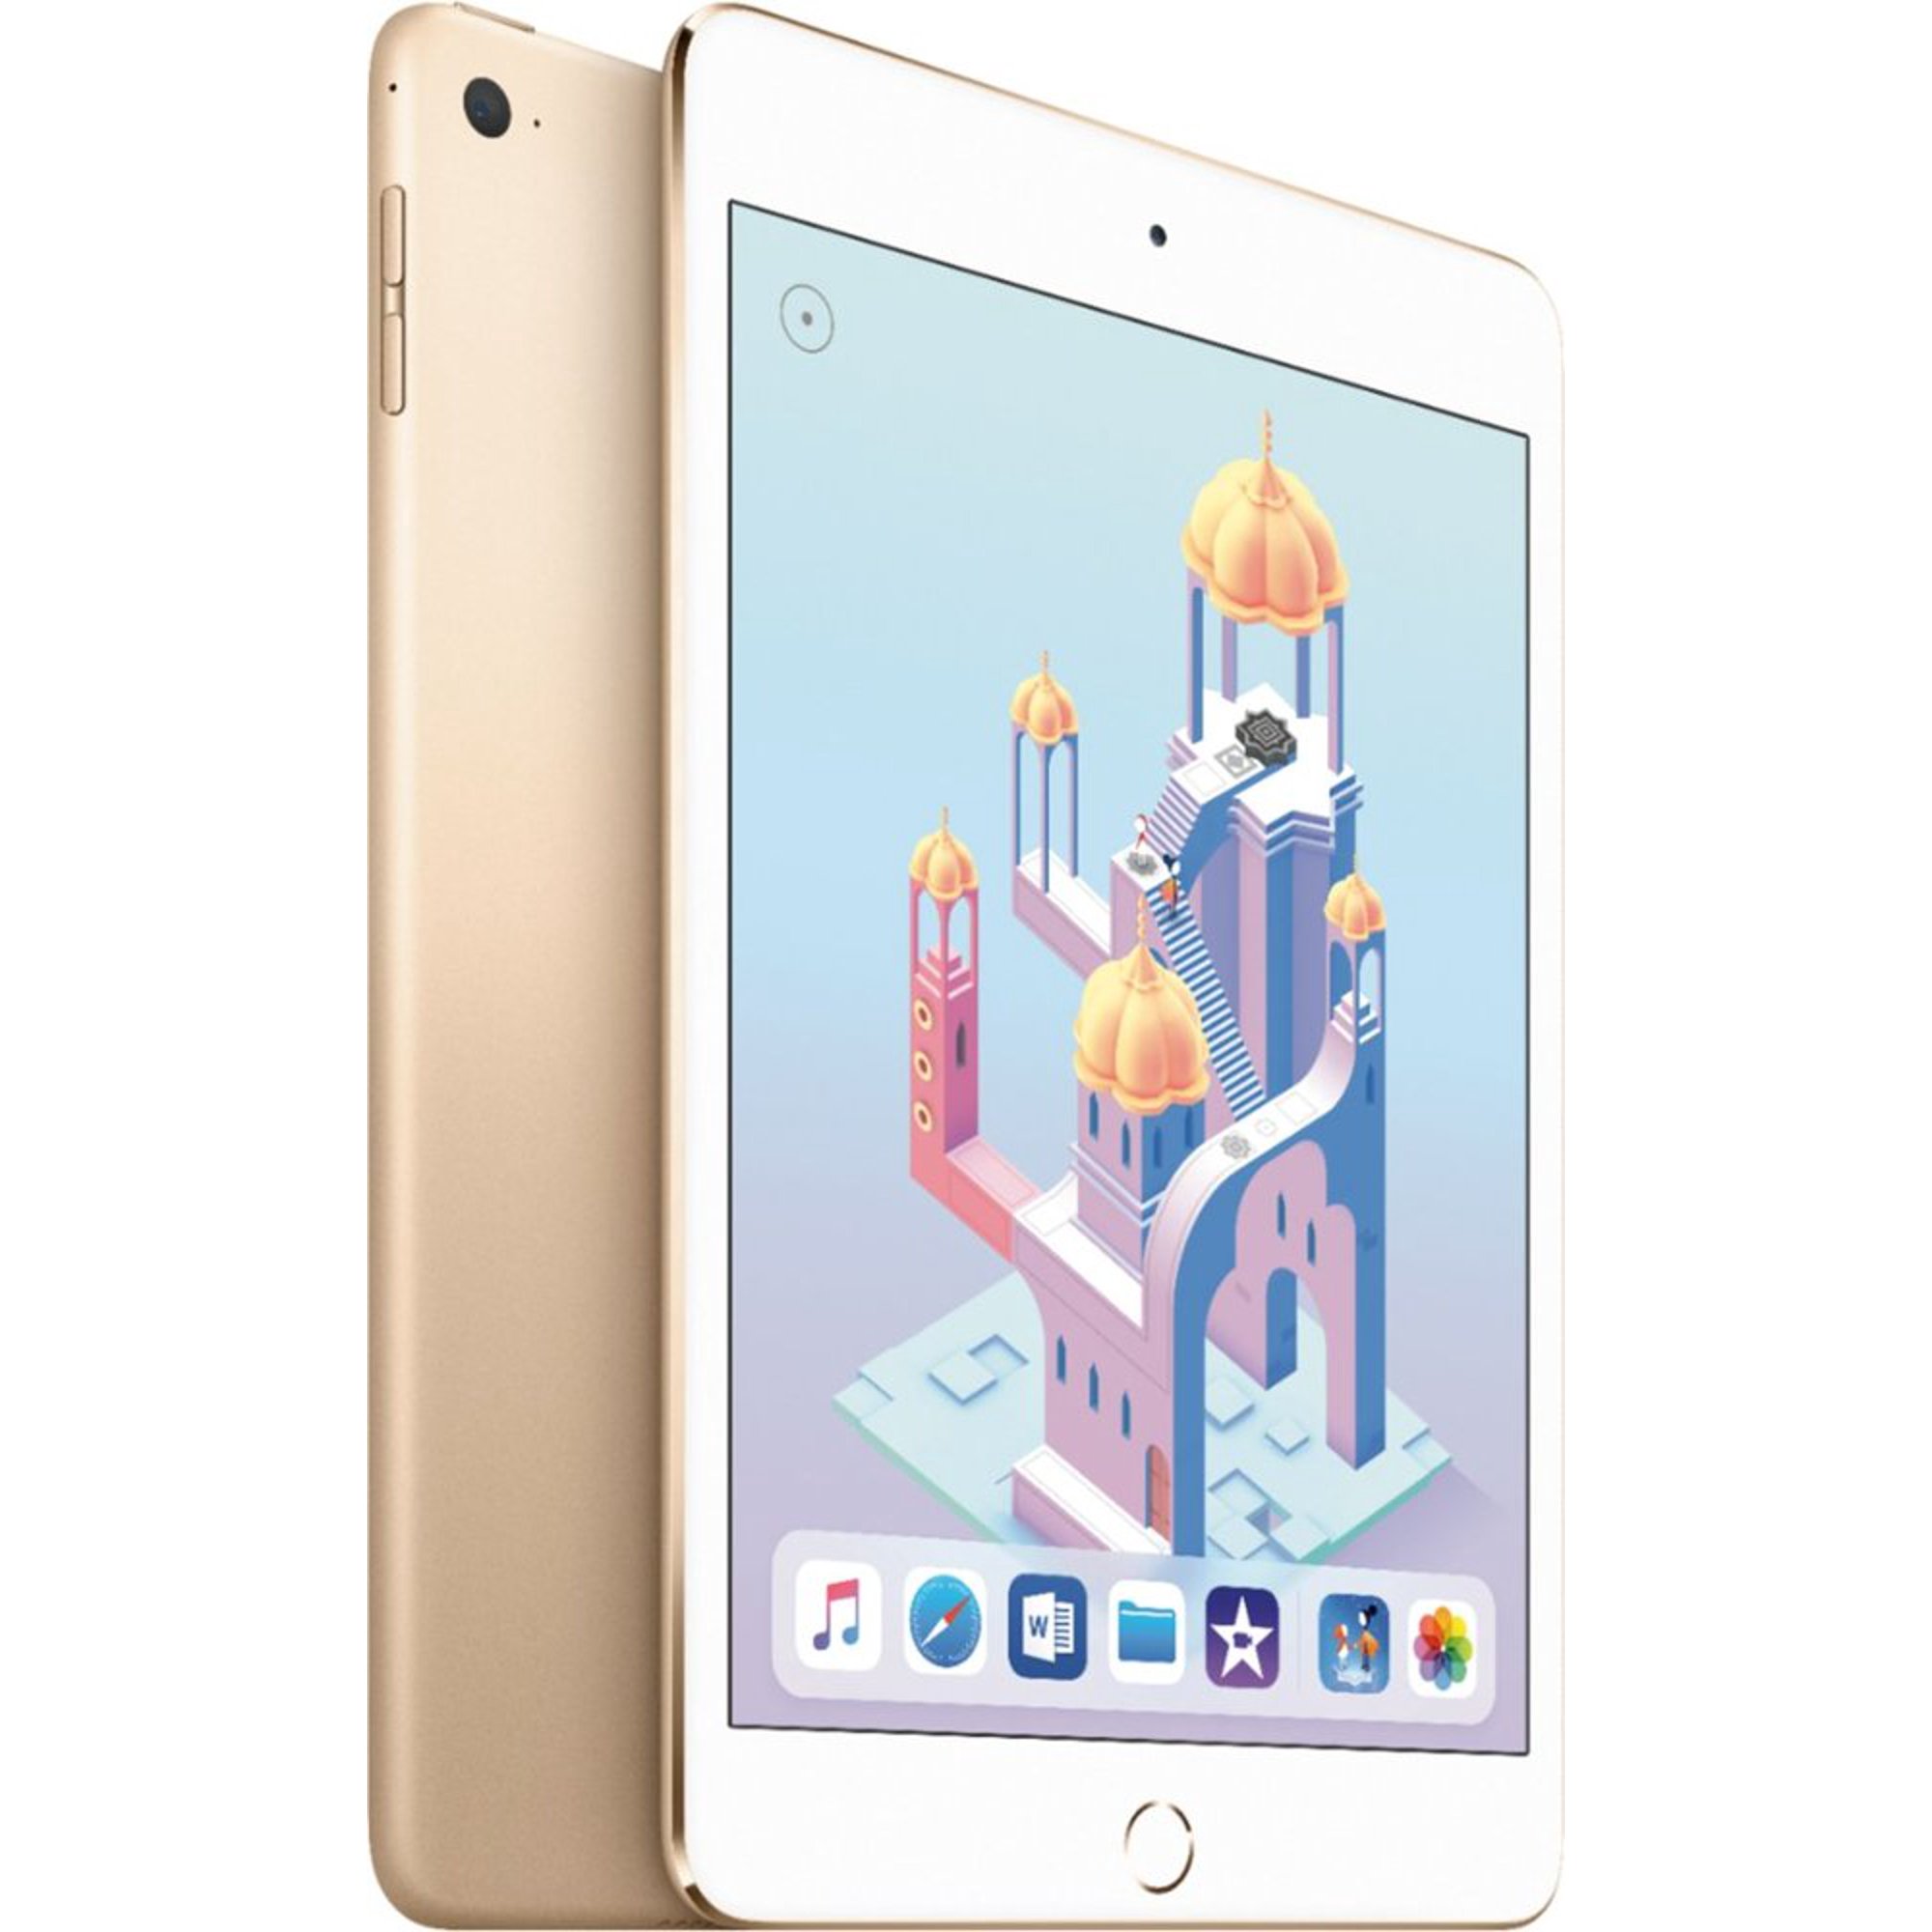 Restored Apple iPad Mini 4 MK9Q2LL/A 7.9-Inch, 128GB, Wi-Fi, iOS 9, Gold -  4th Gen - New (Refurbished)